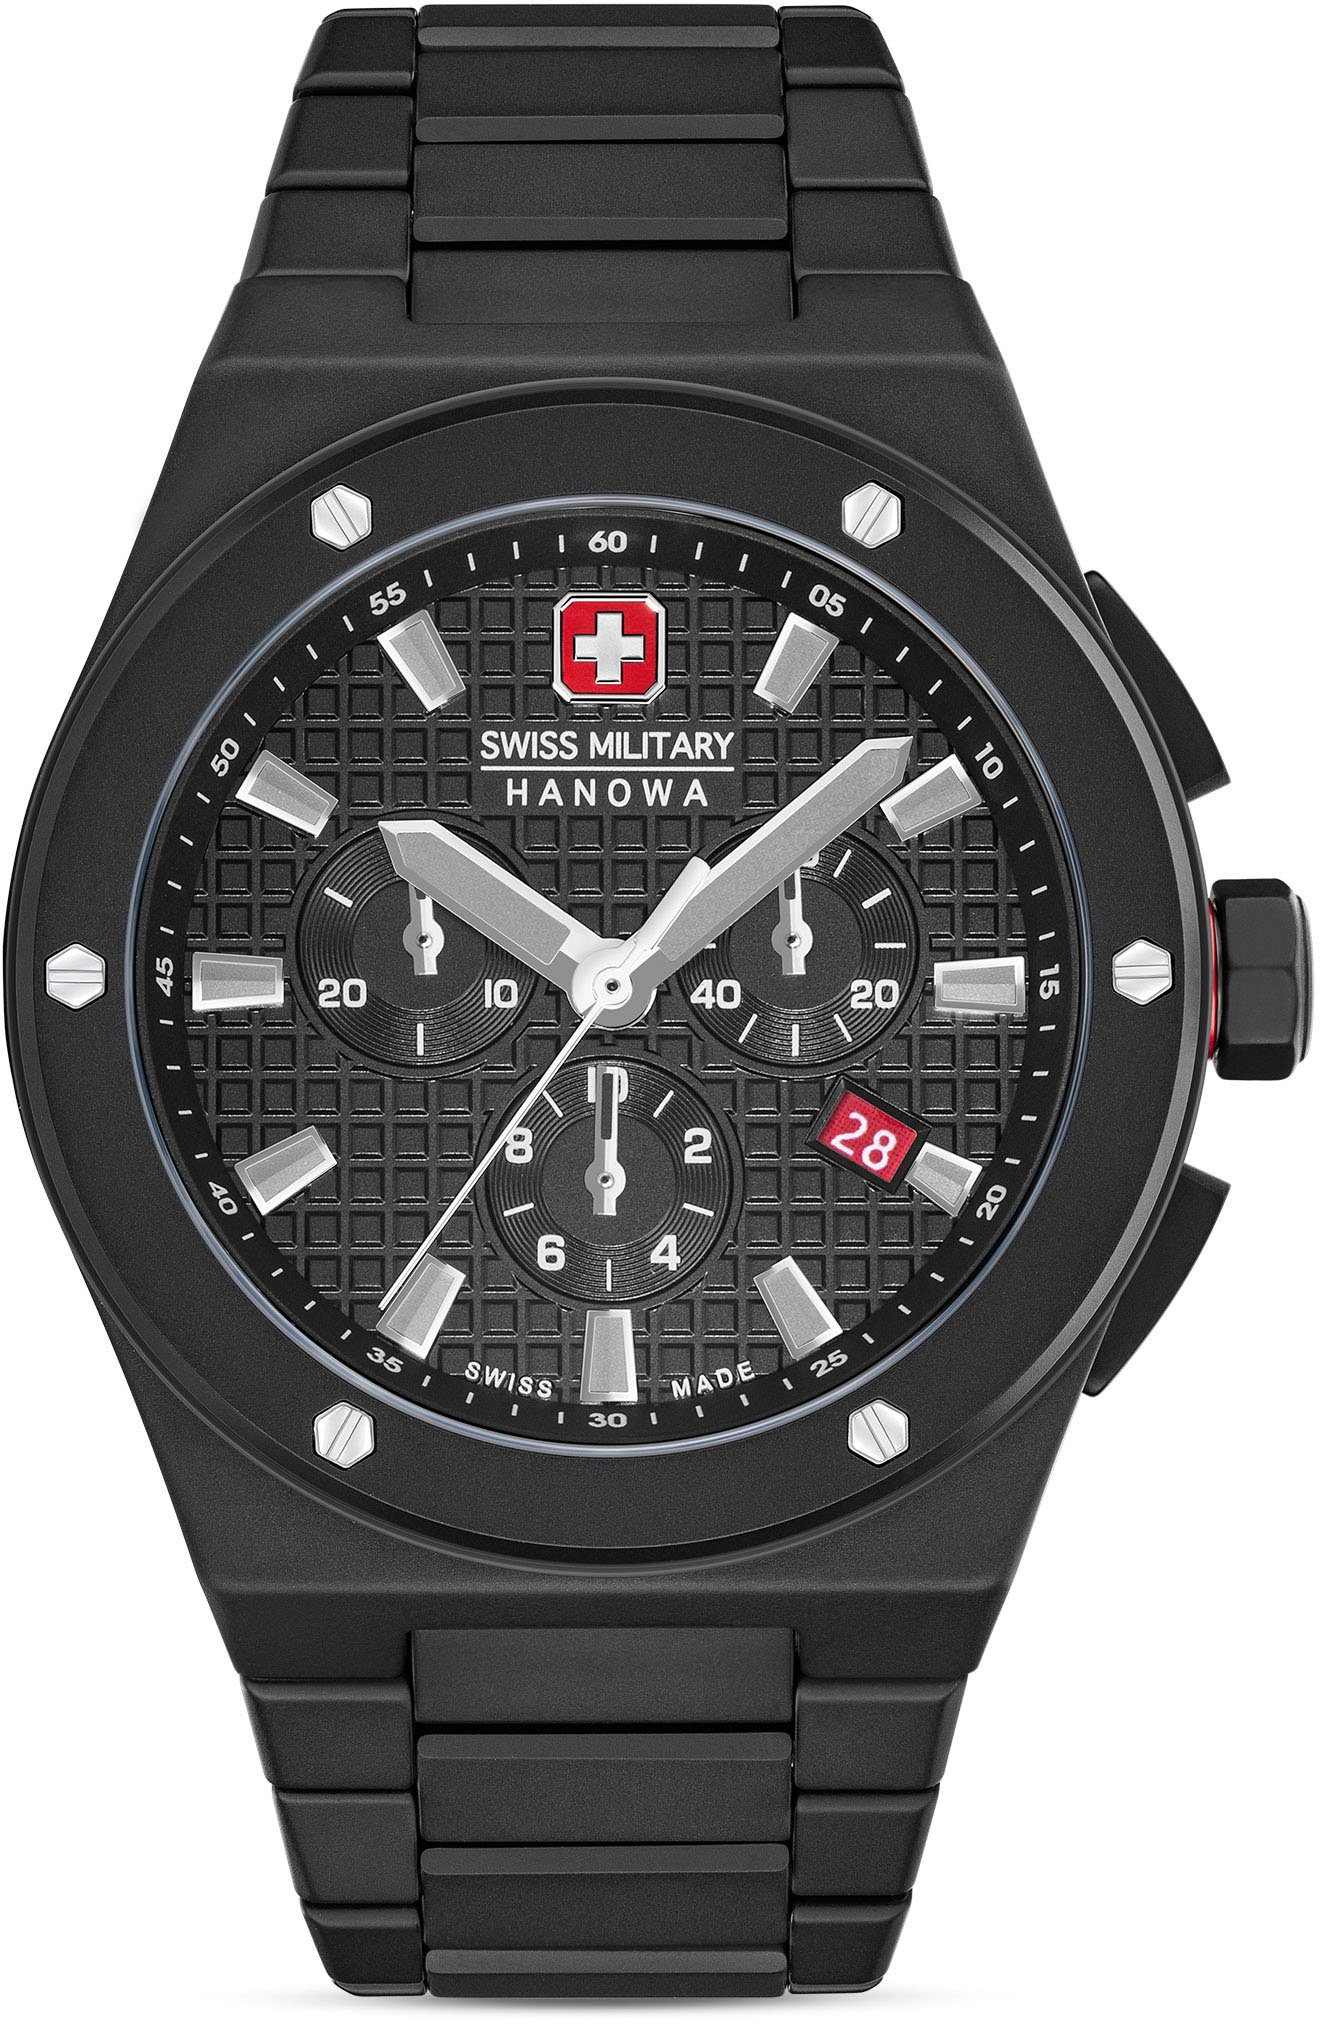 Swiss SIDEWINDER SMWGI0002280 Military Chronograph Schwarz CERAMIC, Hanowa